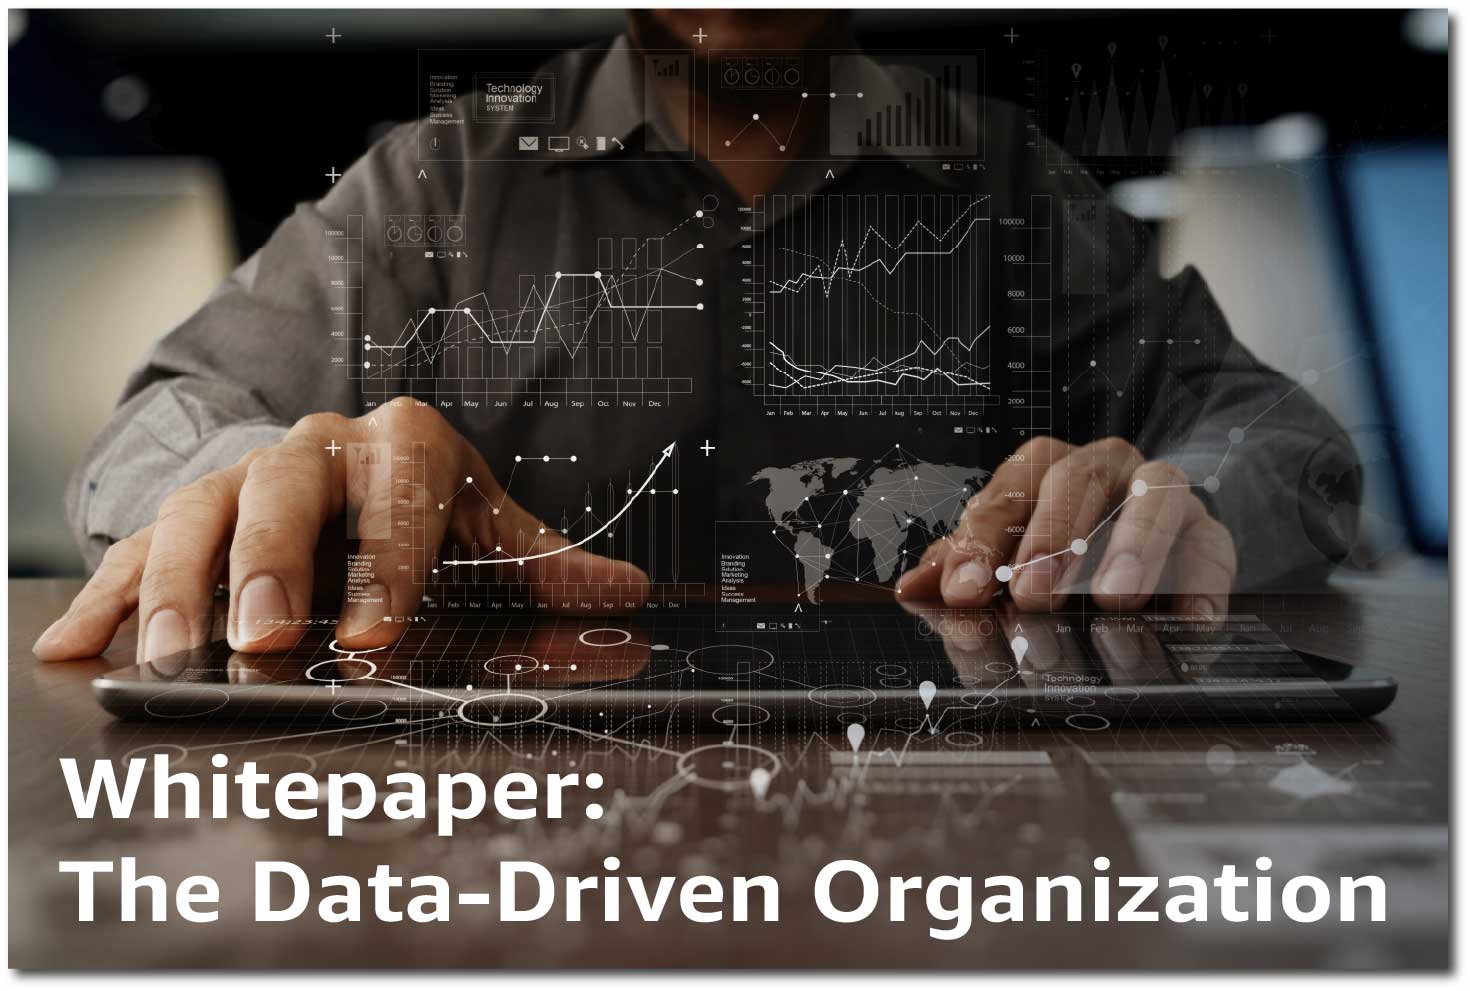 The Data-Driven Organization